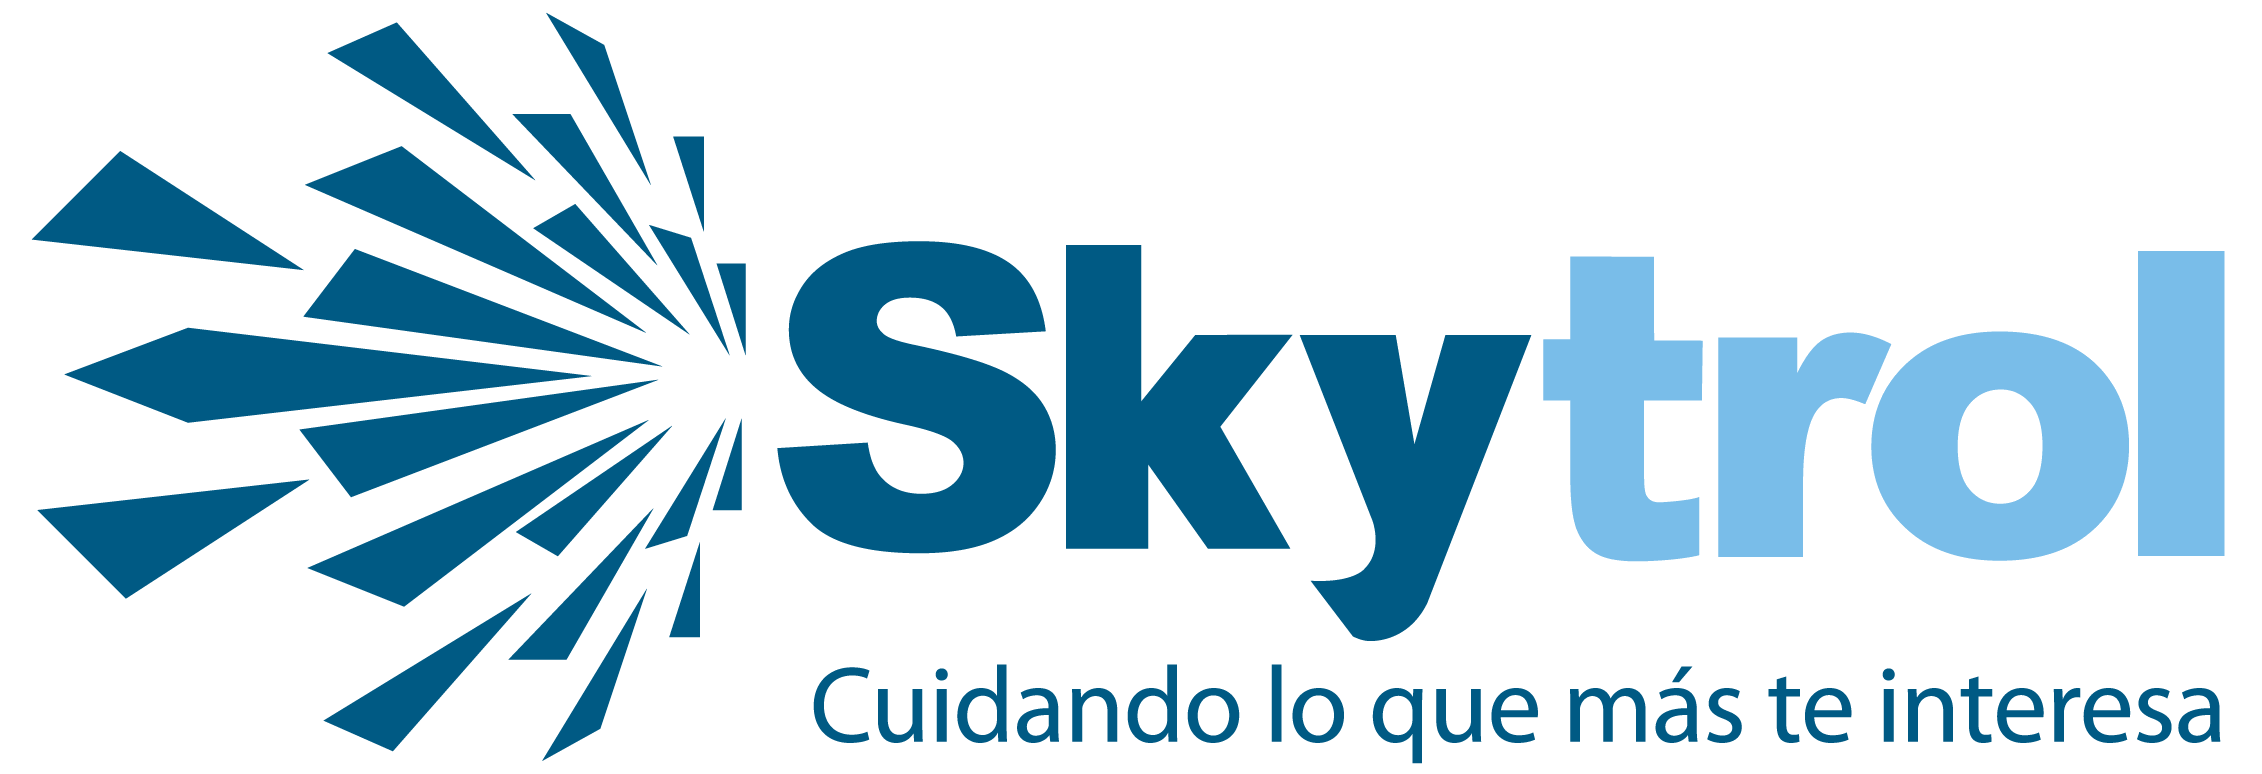 skytrol logo